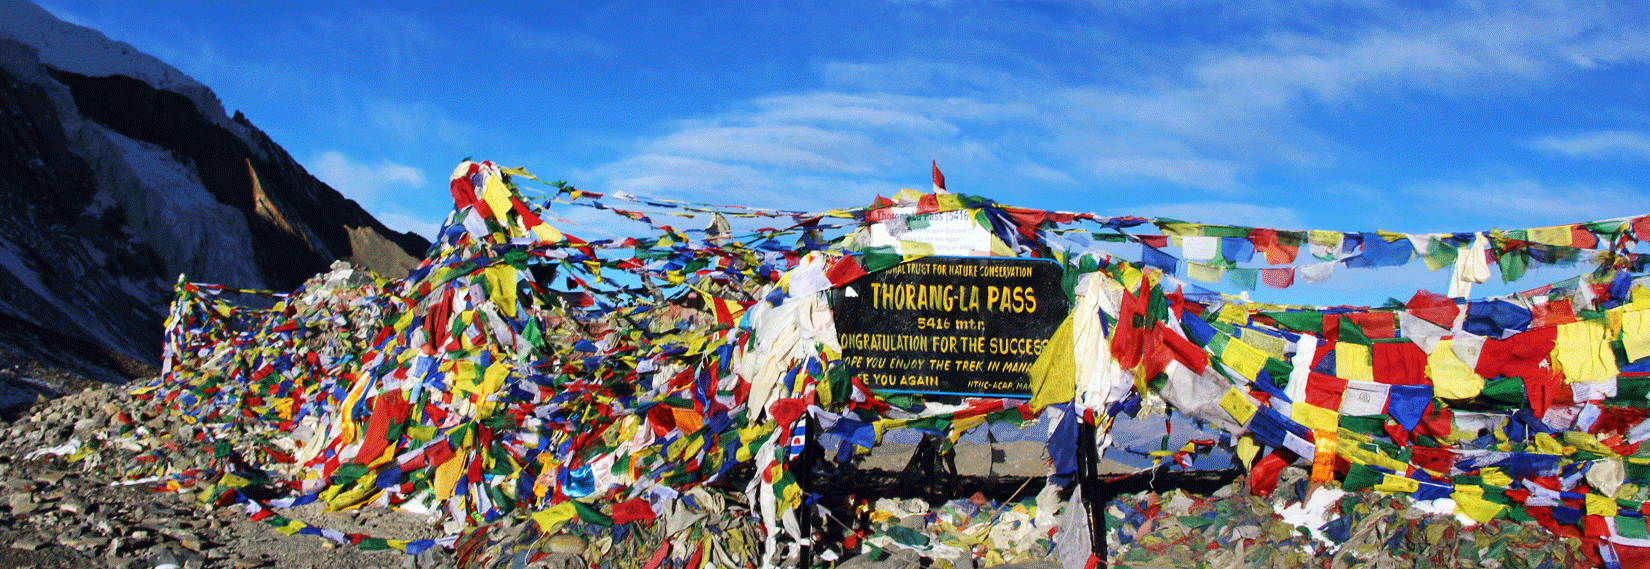 Thorang La Pass in Annapuran 